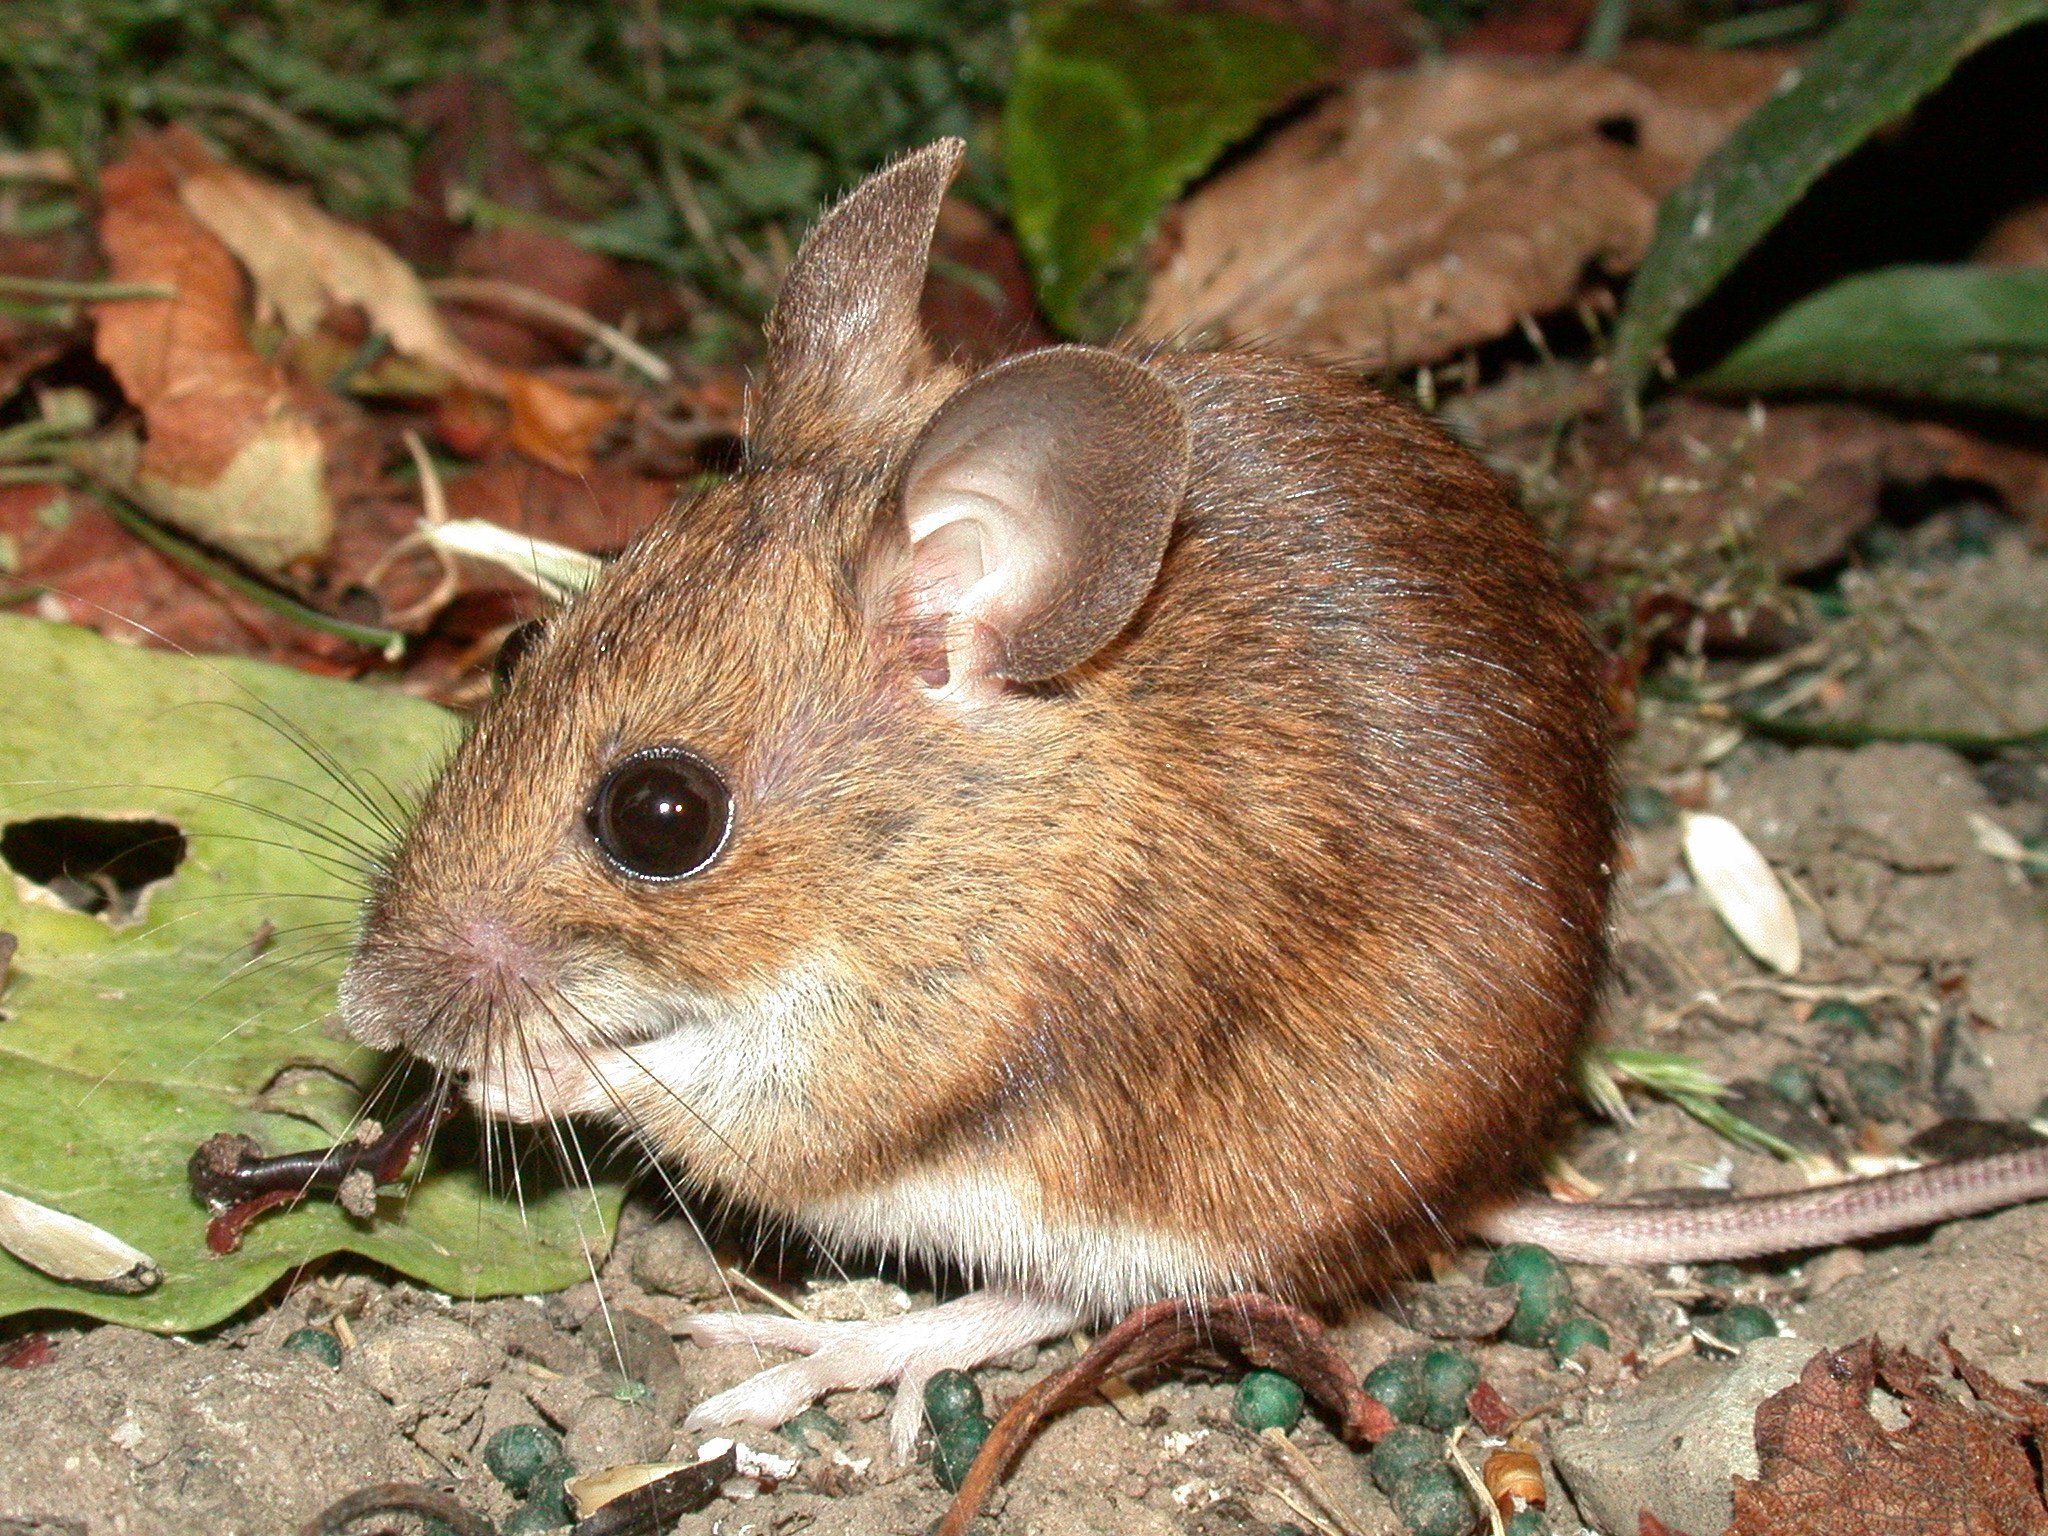 Мыши живущие в лесу. Желтогорлая мышь. Восточноазиатская мышь Apodemus peninsulae Thomas, 1907. Apodemus uralensis. Лесная мышь.